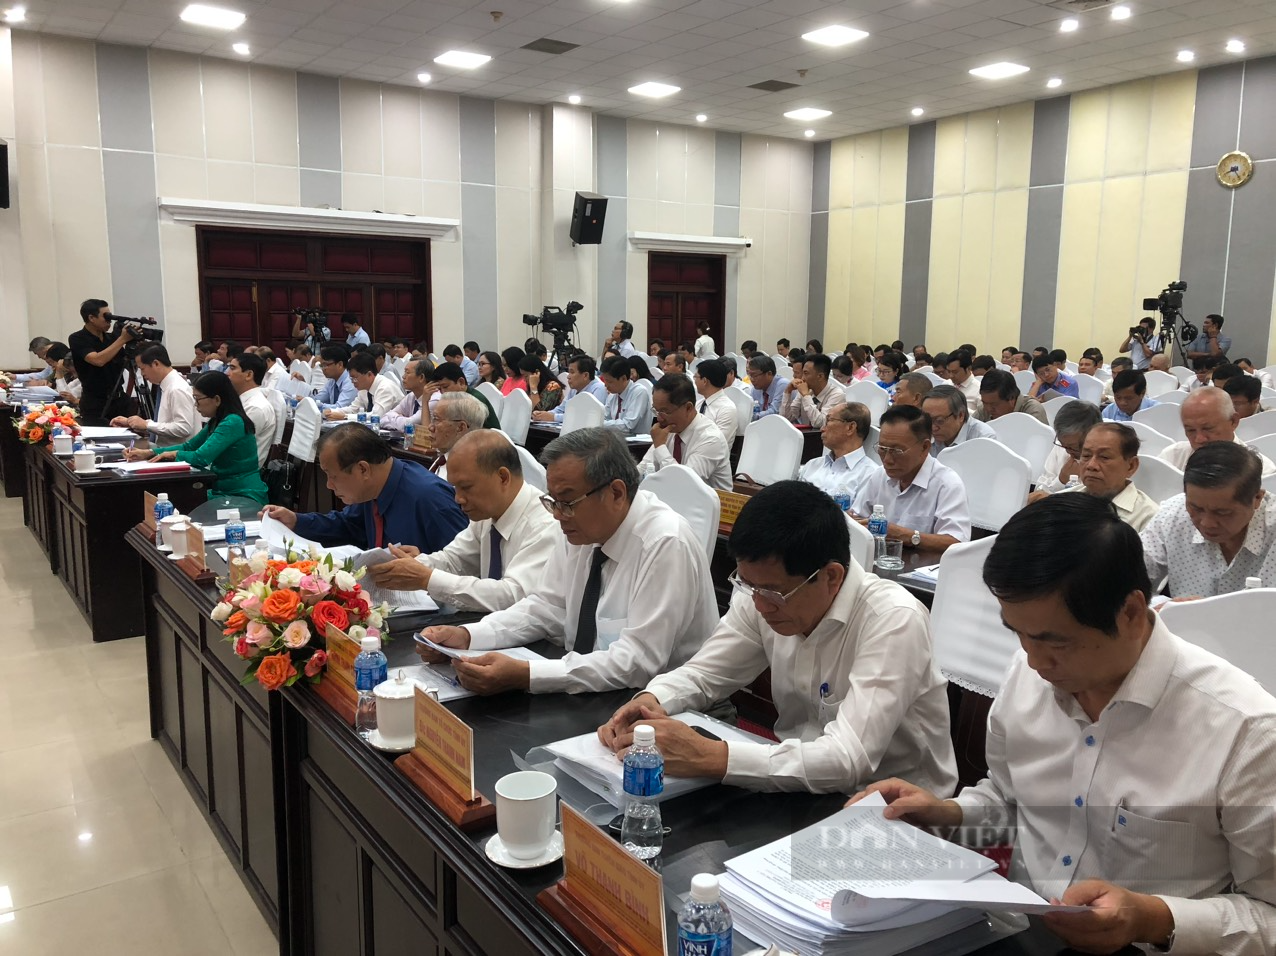 Kỳ họp HĐND tỉnh Bình Thuận: Bàn nhiều việc quan trọng liên quan đến phát triển kinh tế và đời sống người dân - Ảnh 2.